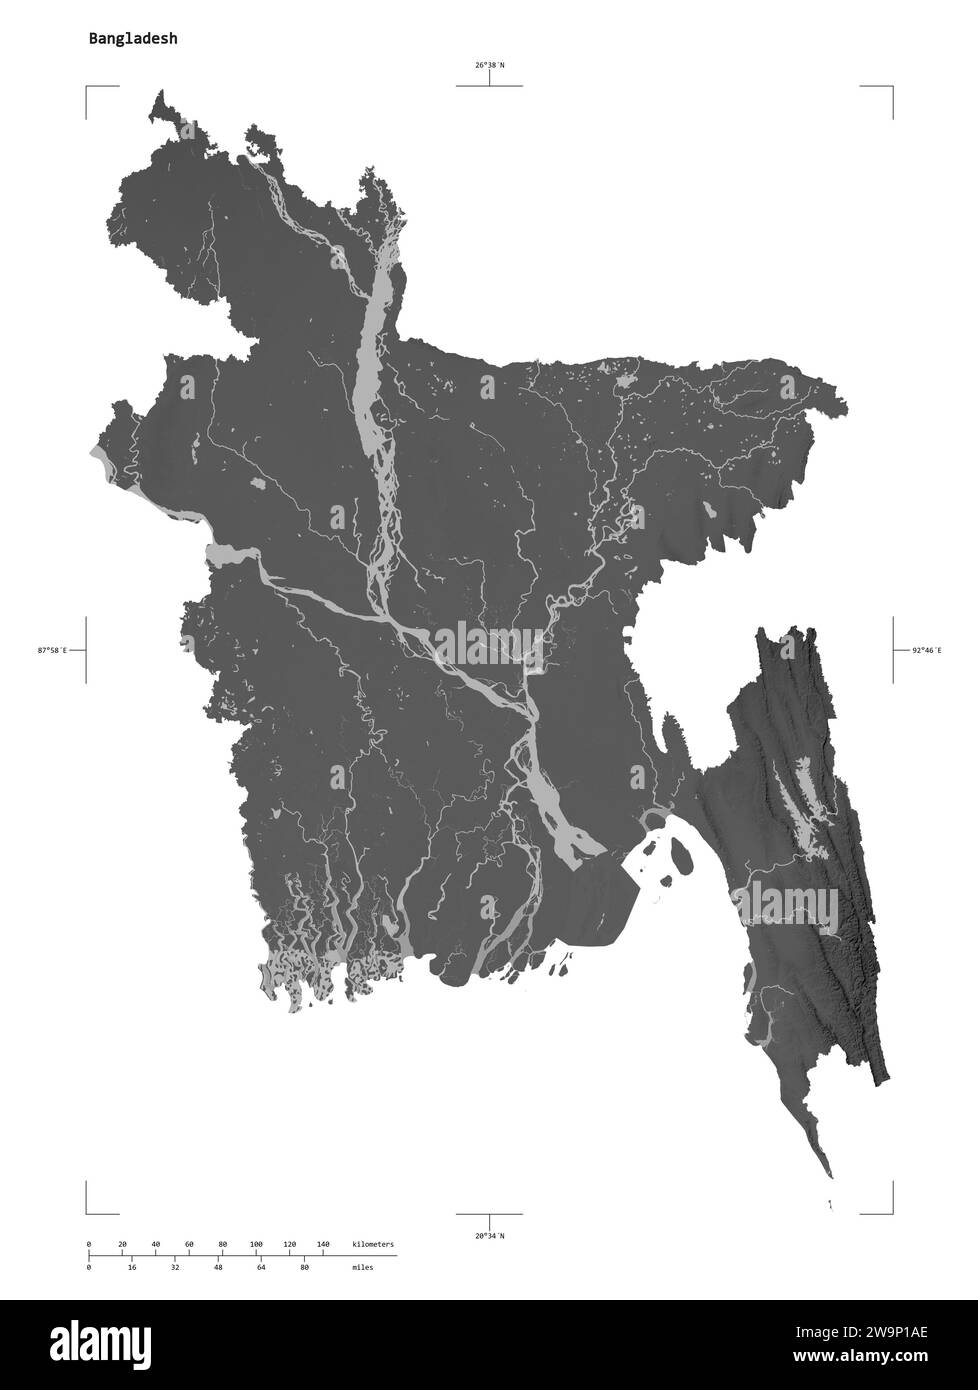 Forme d'une carte d'altitude en niveaux de gris avec les lacs et les rivières du Bangladesh, avec l'échelle de distance et les coordonnées de la frontière de la carte, isolé sur blanc Banque D'Images